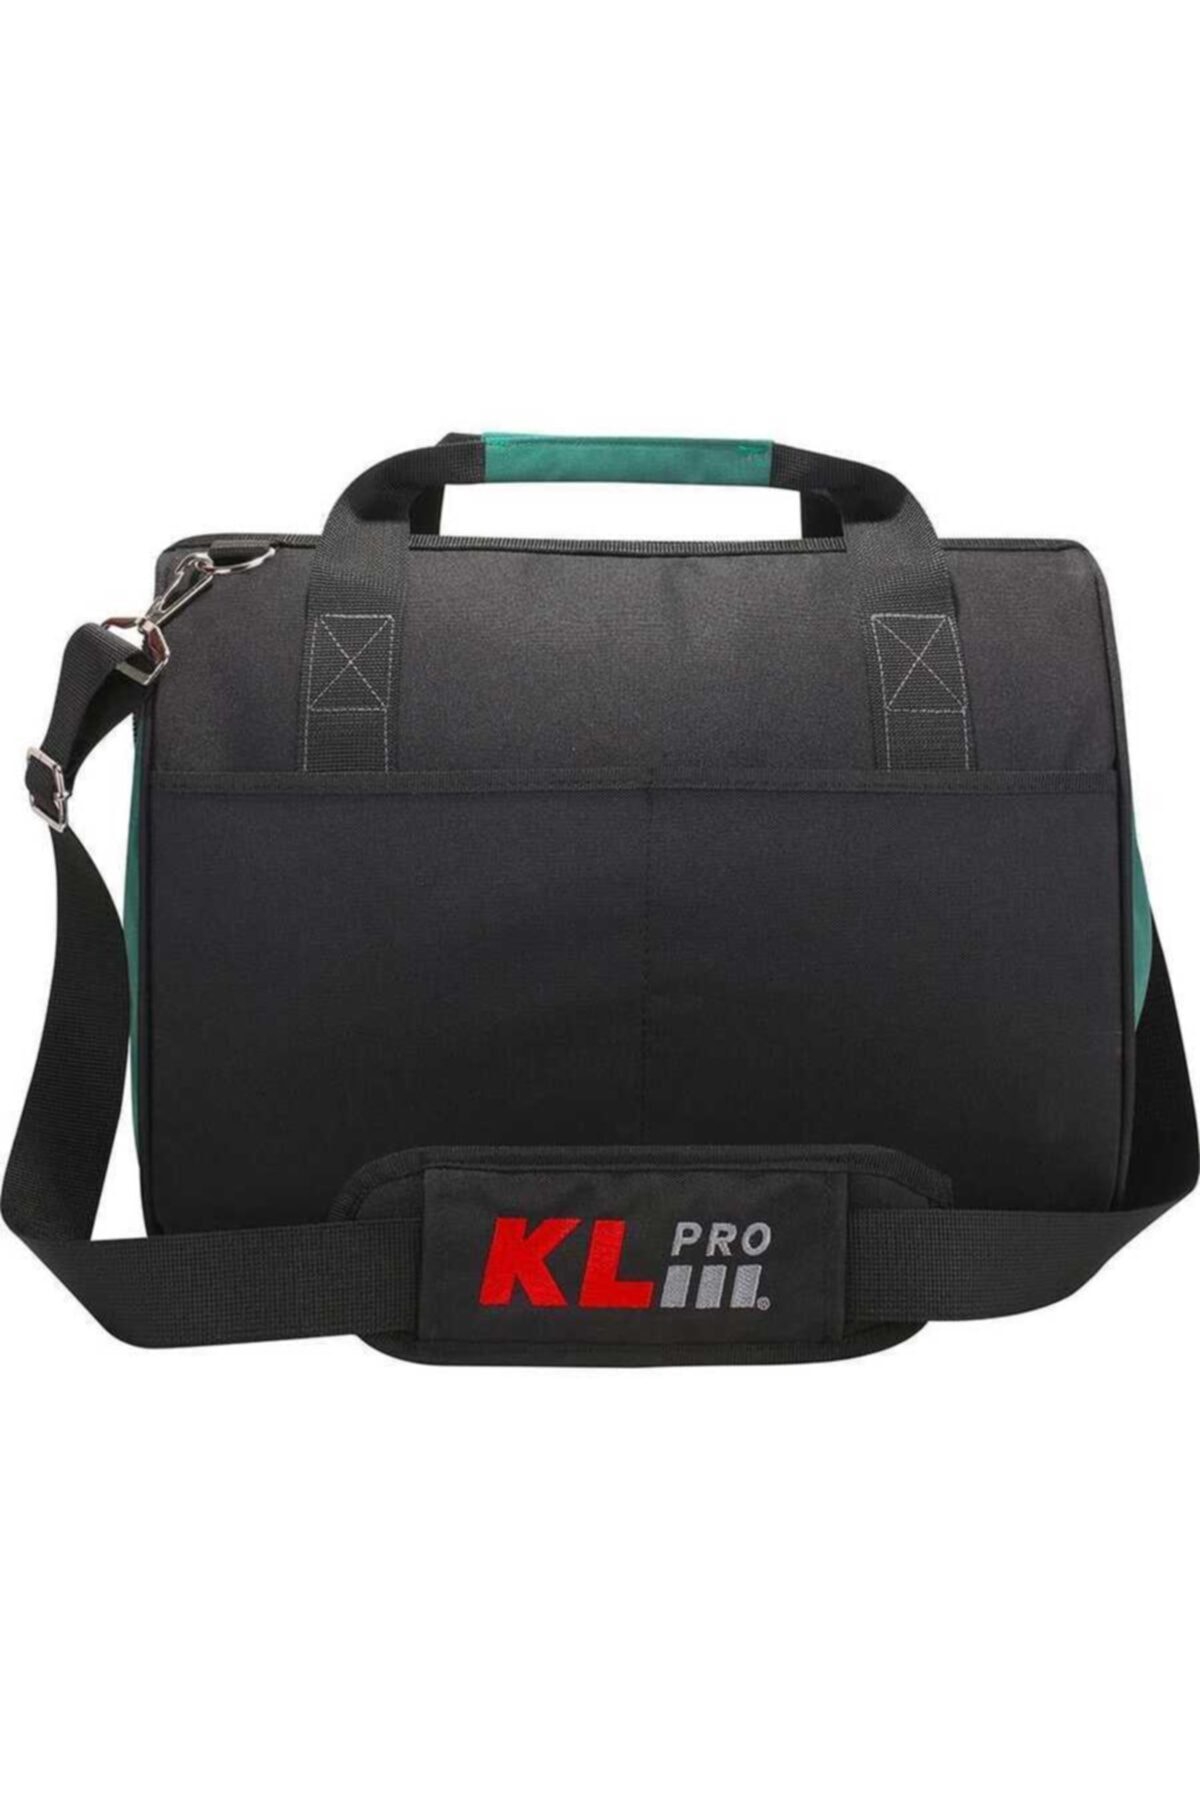 KLPRO Orta Boy Alet Taşıma çantası Kltct16 OH6777